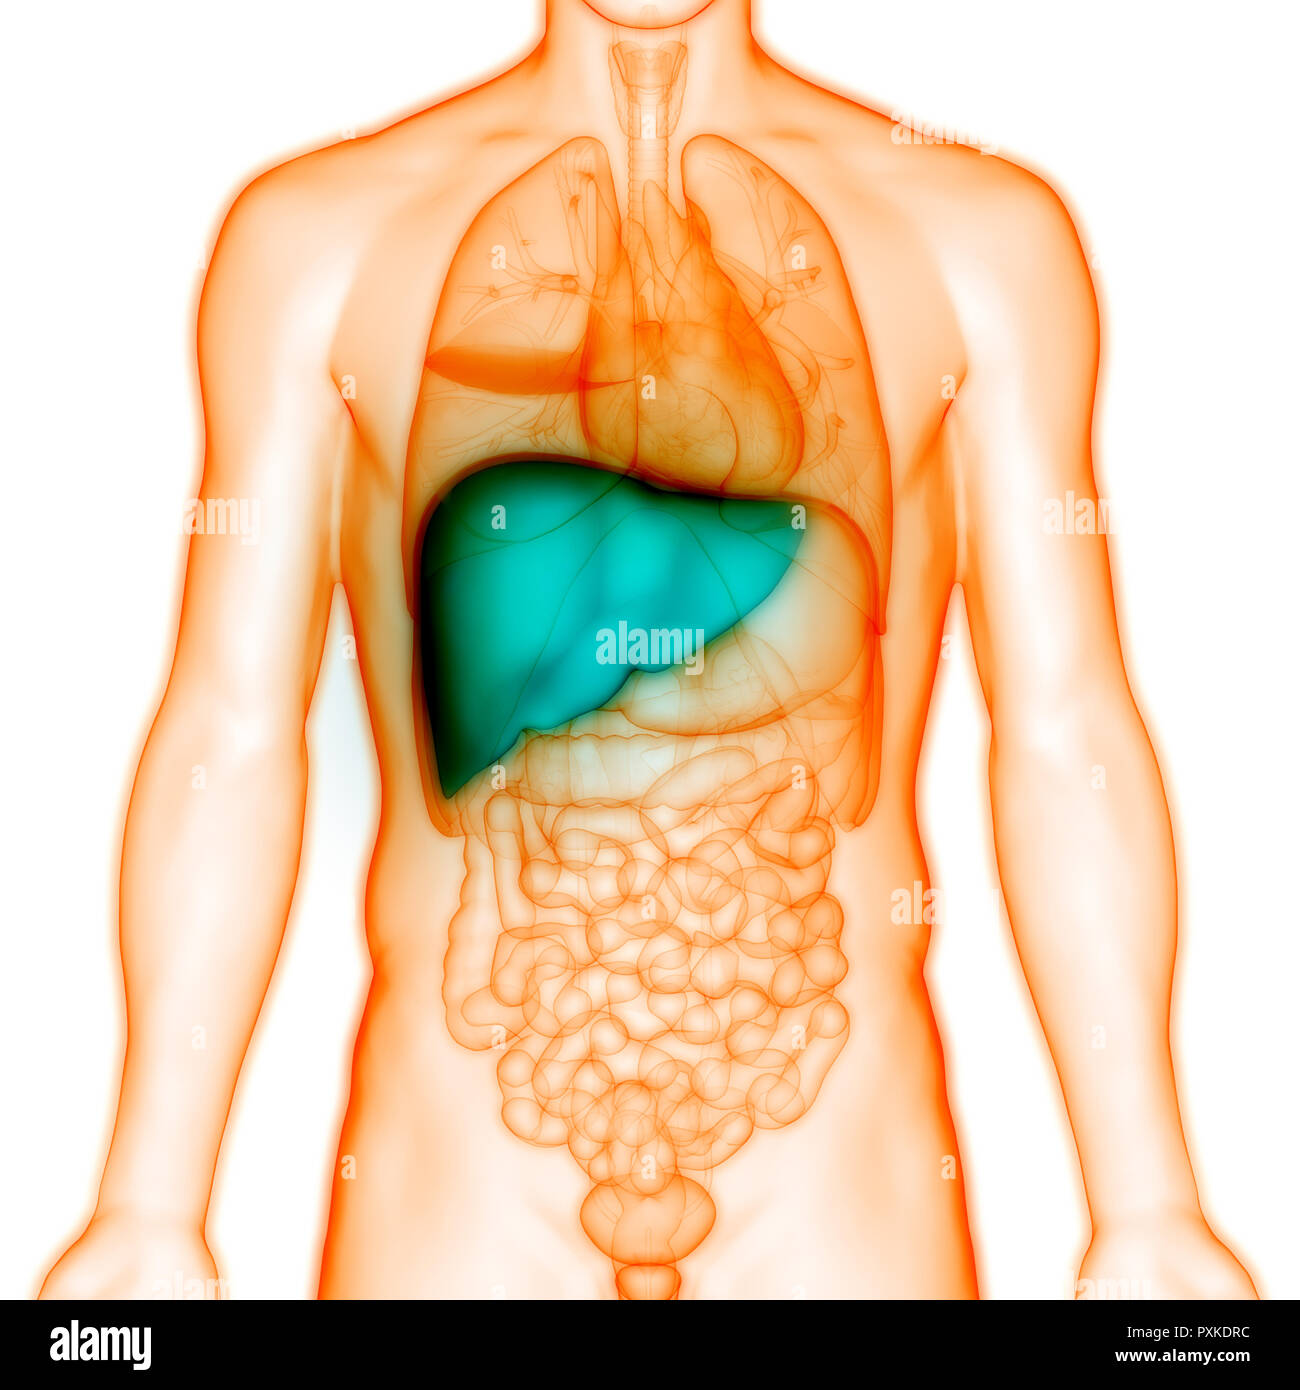 Изображение тела человека печень. Расположение печени в организме. Внутренние органы человека печень. Анатомическое расположение печени.